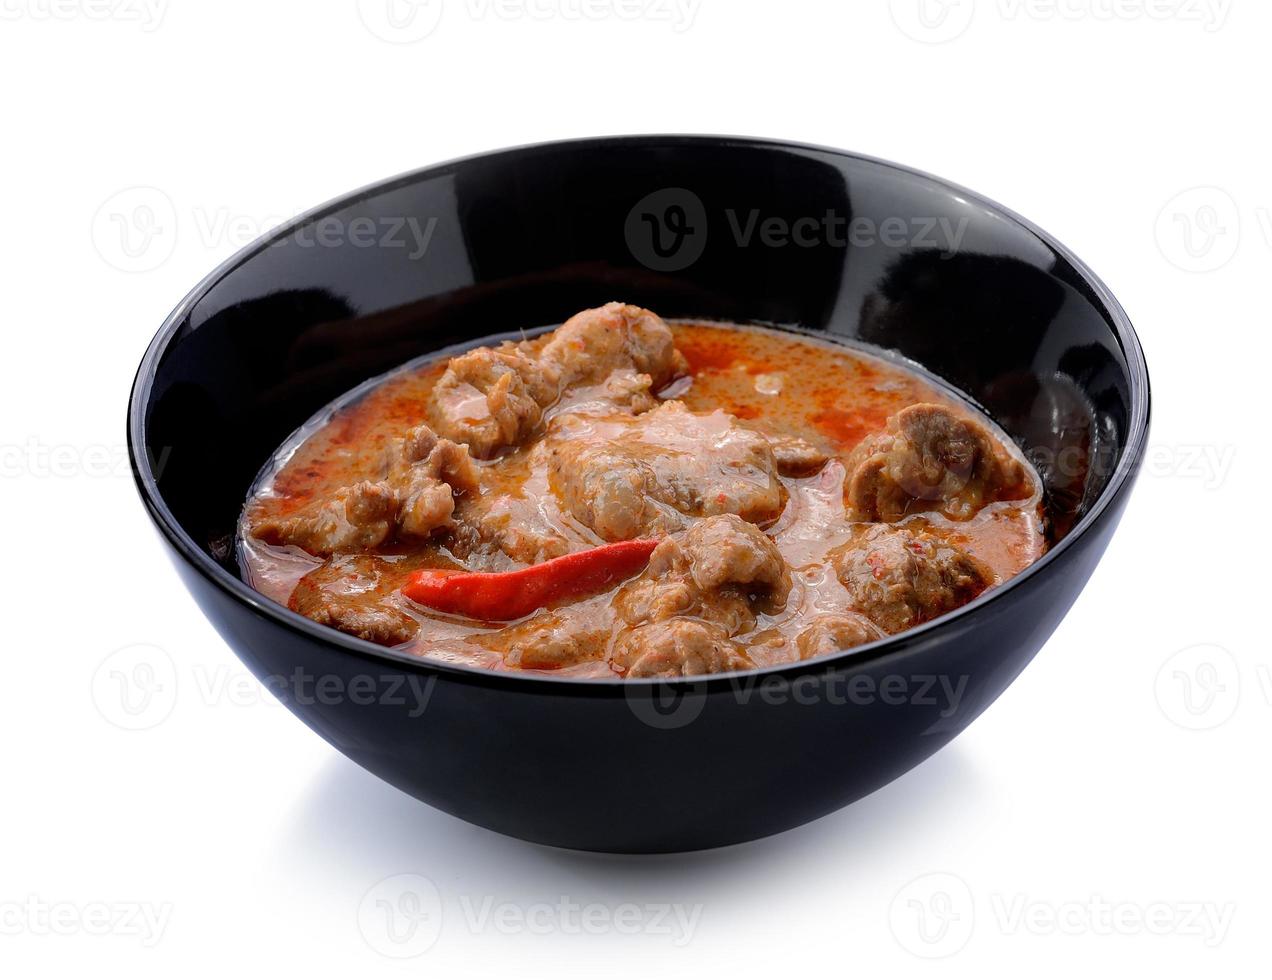 panaeng curry är en typ av thailändsk curry foto